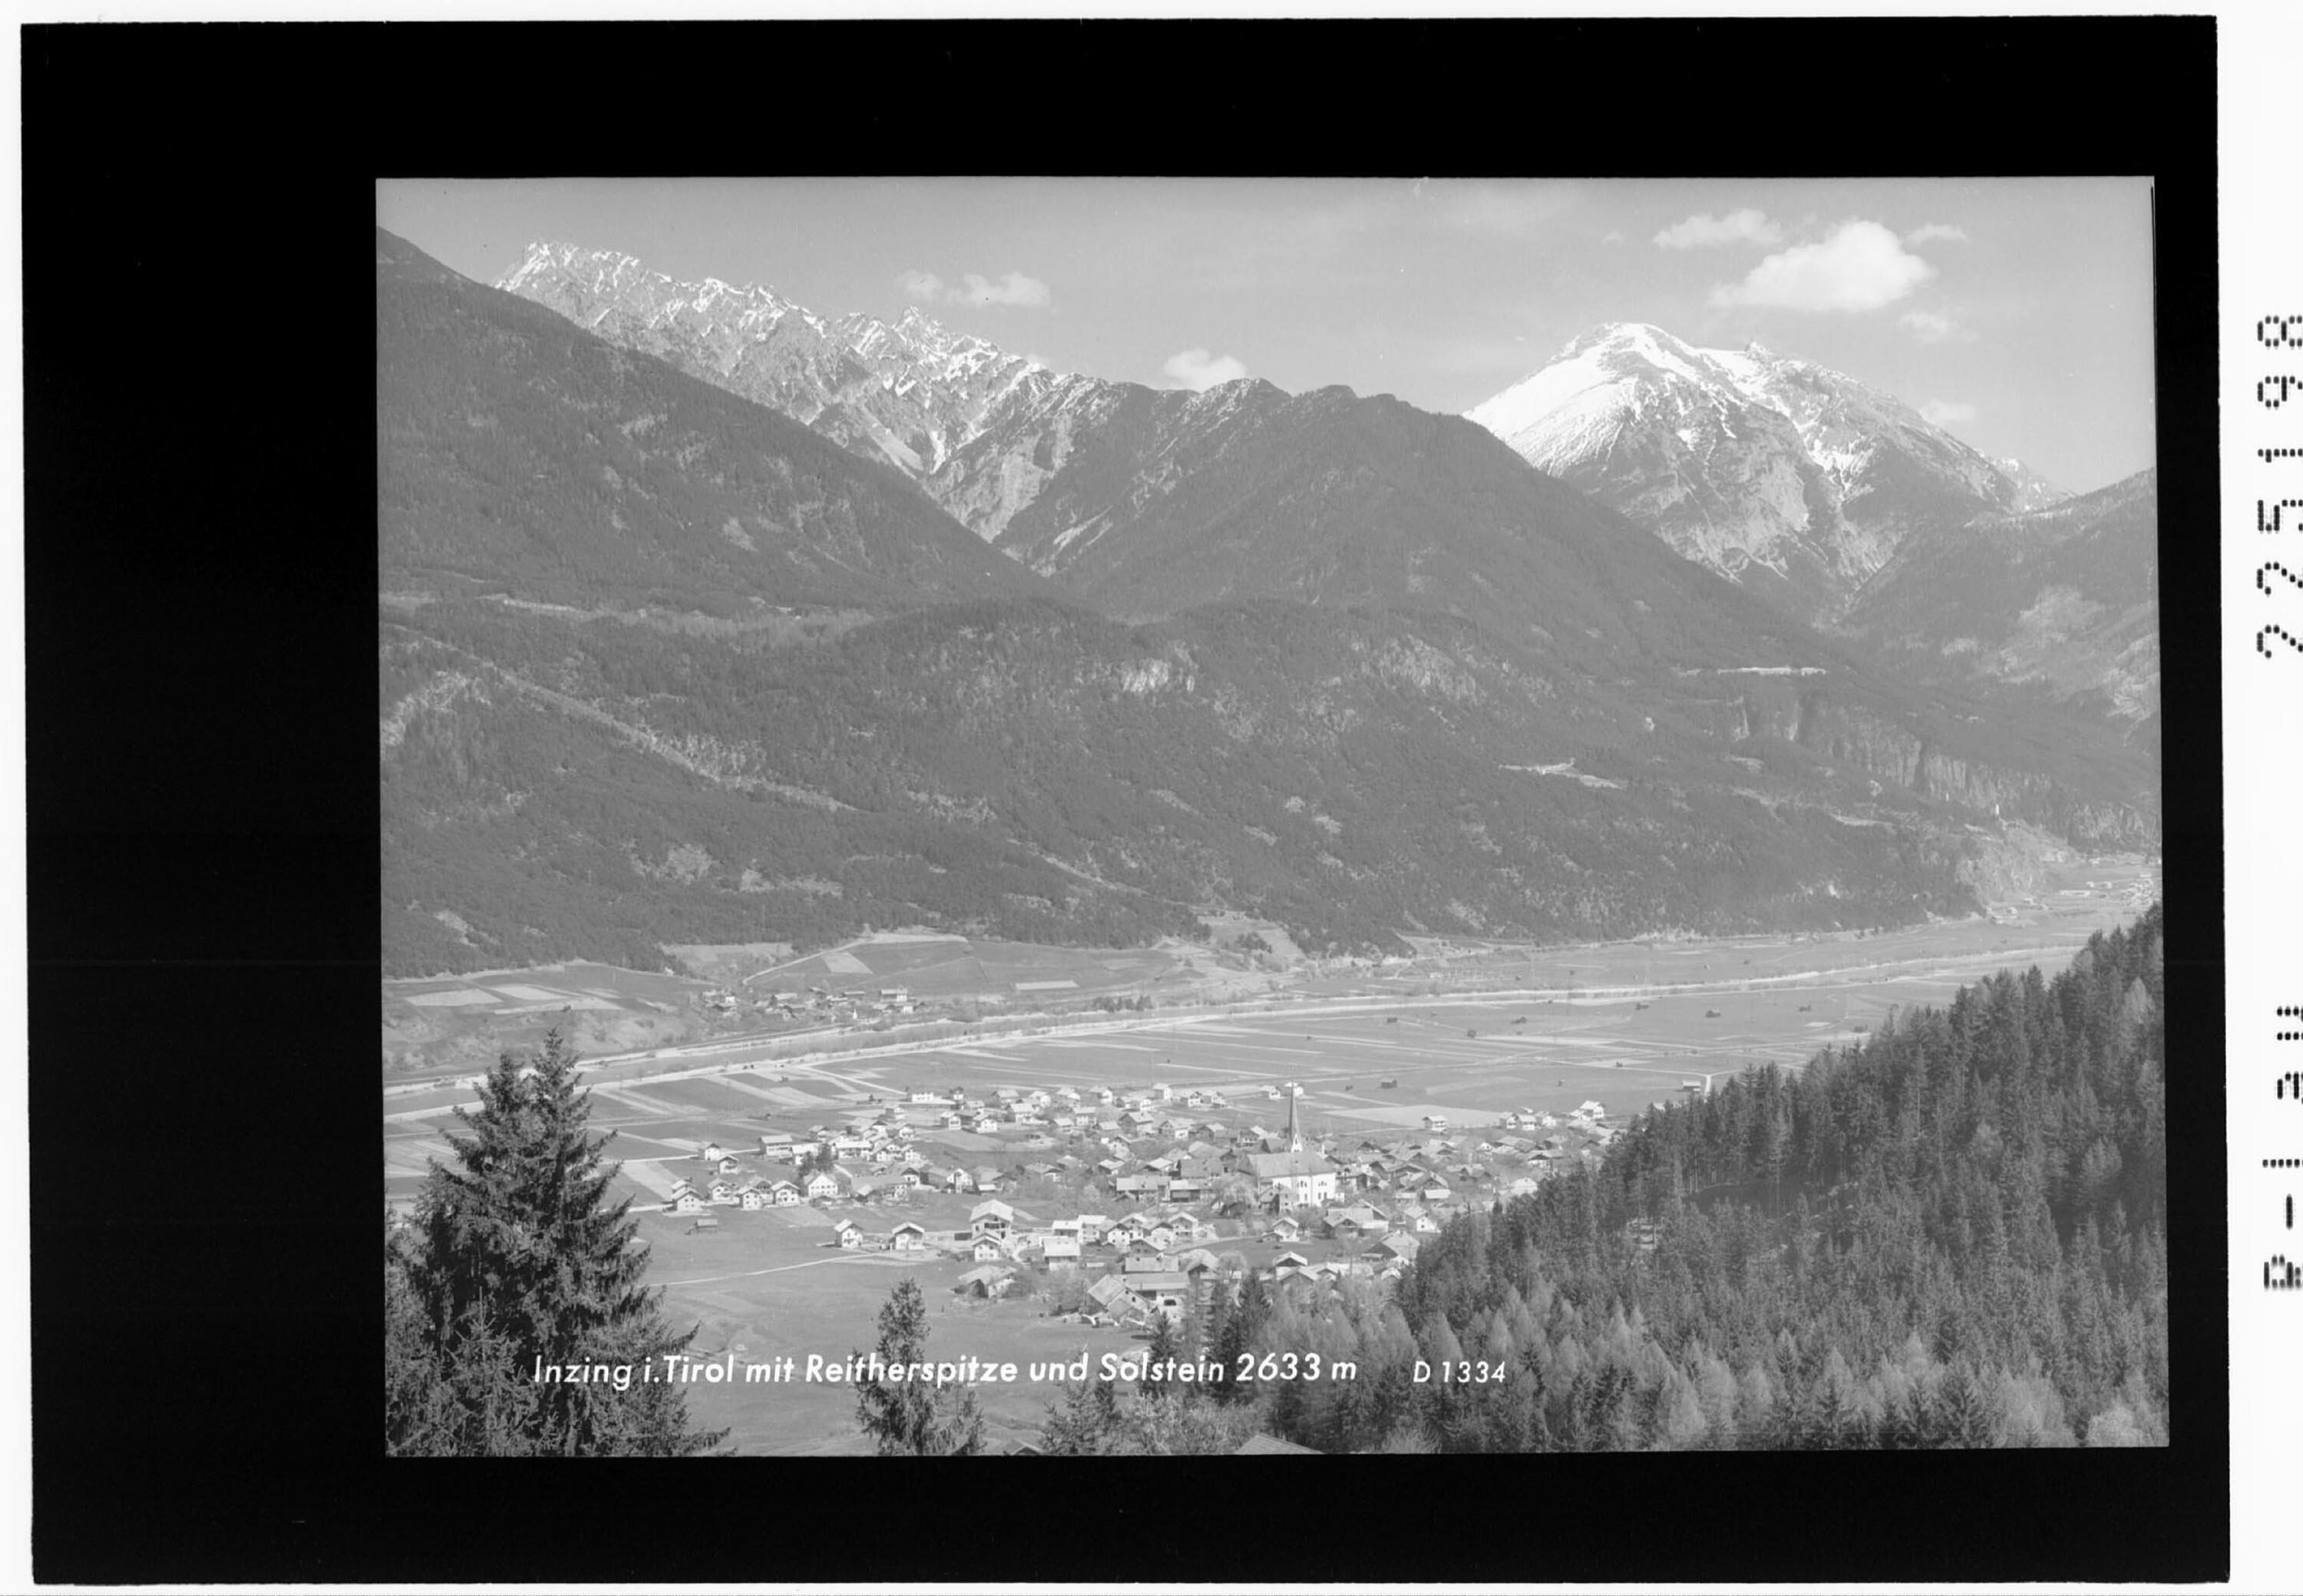 Inzing in Tirol mit Reitherspitze und Solstein 2633 m></div>


    <hr>
    <div class=